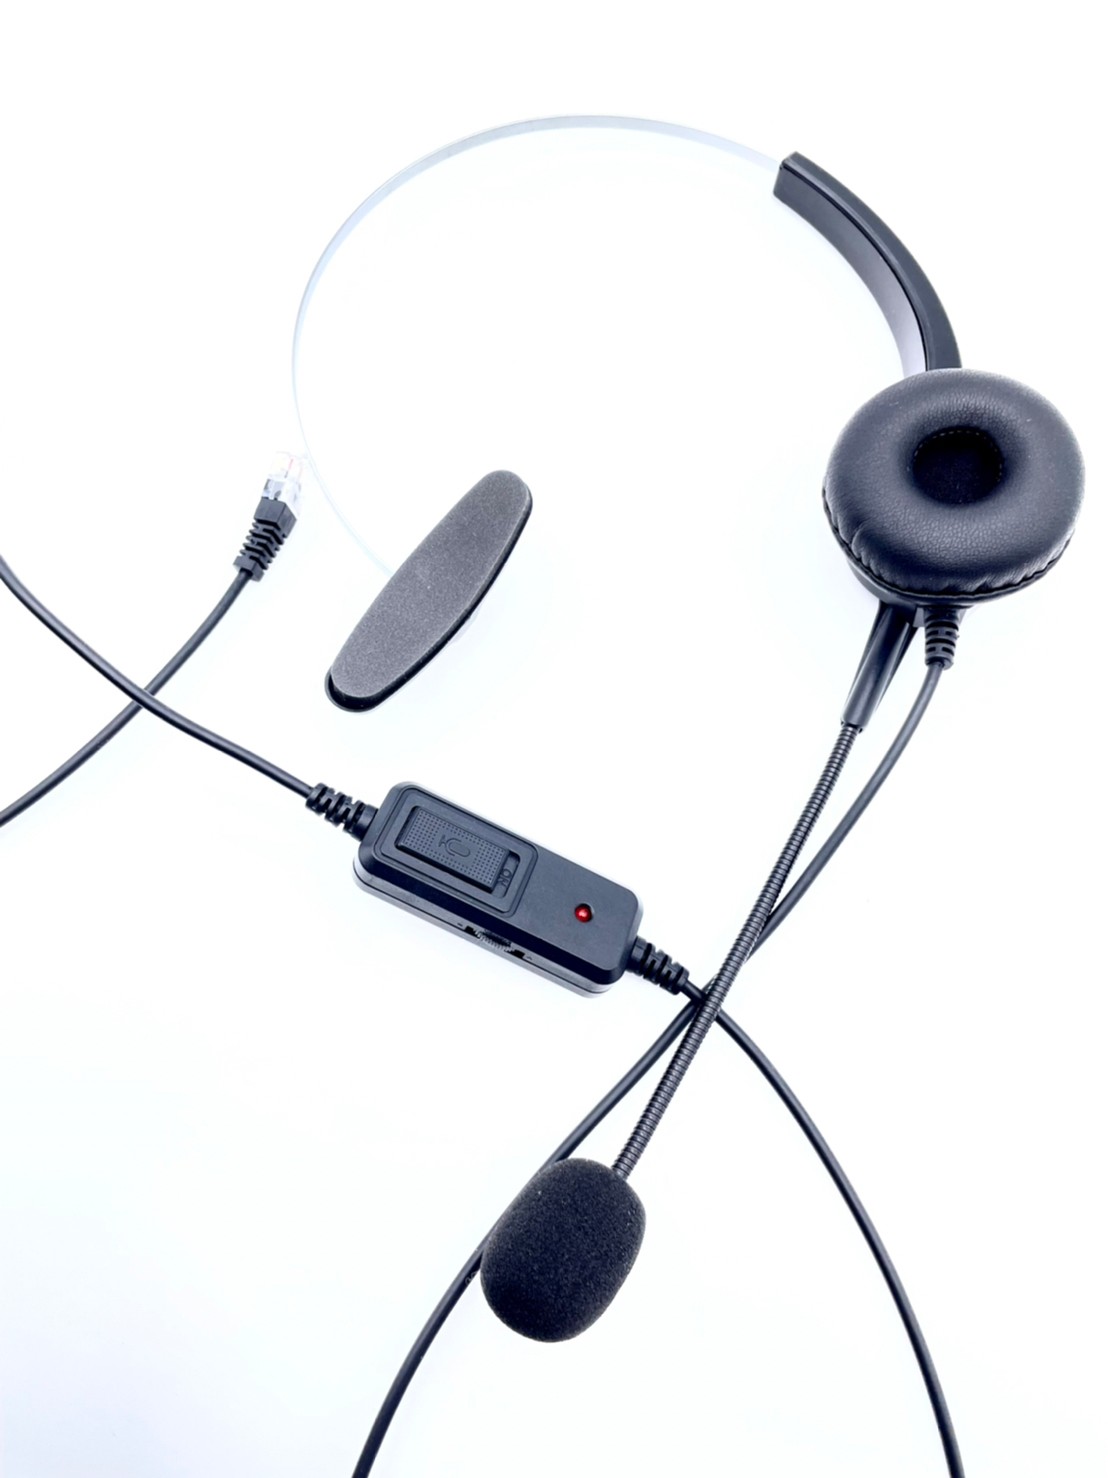 單耳電話耳機880元 國洋TENTEL K362 總機電話耳機 話機耳機 另有 傳康電話耳機 ALCATEL電話耳機 LINEMEX電話耳機